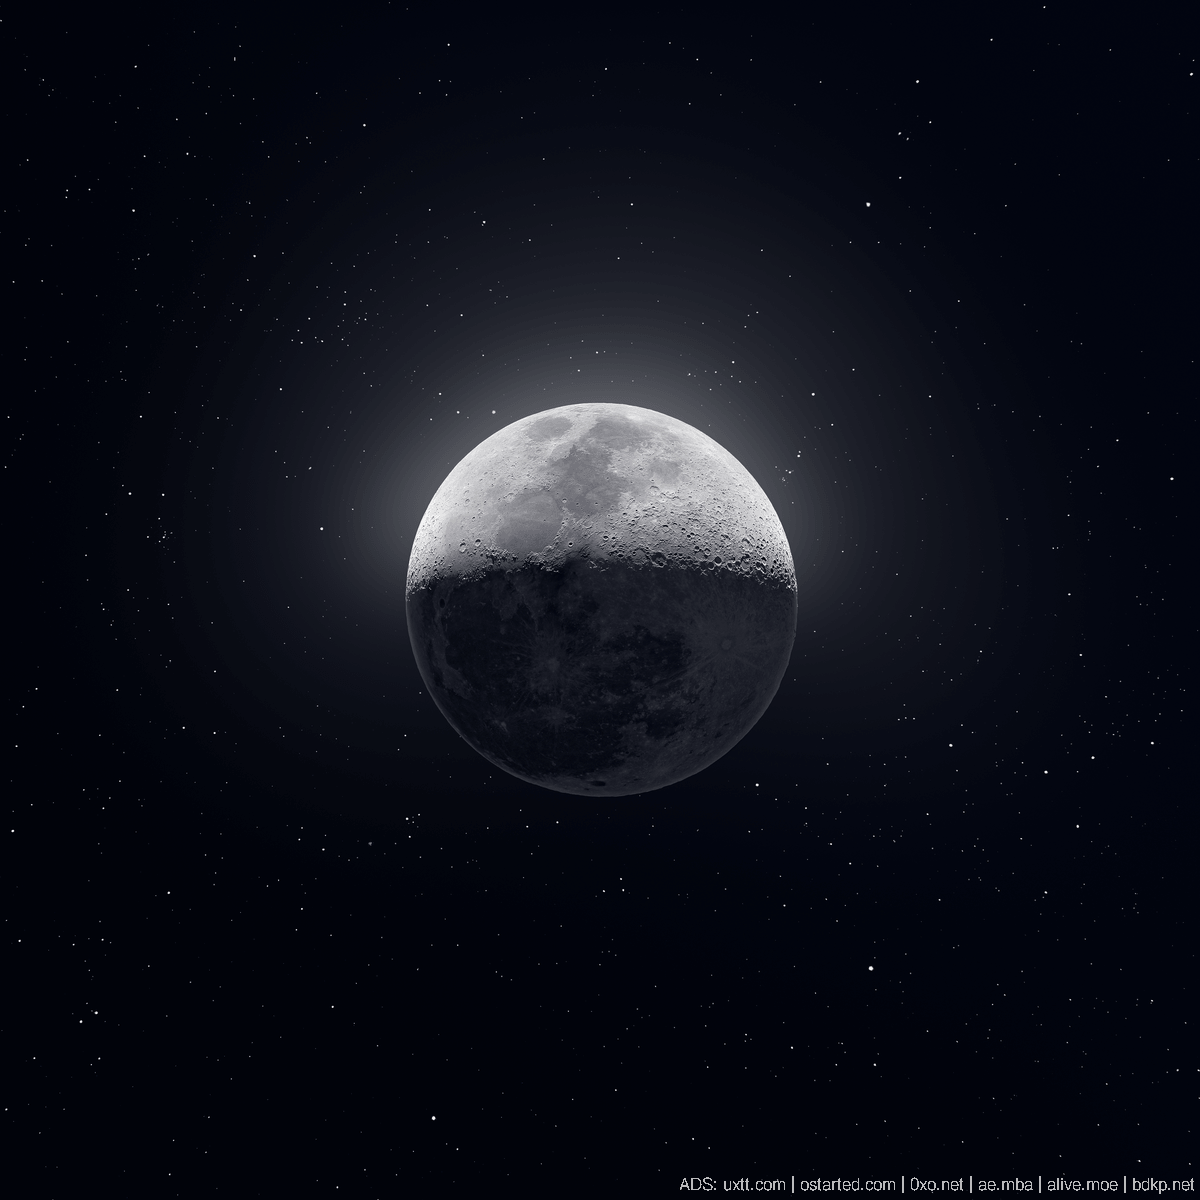 史上最清晰 8100万像素 月球照 291M原图下载 - 第1张图片